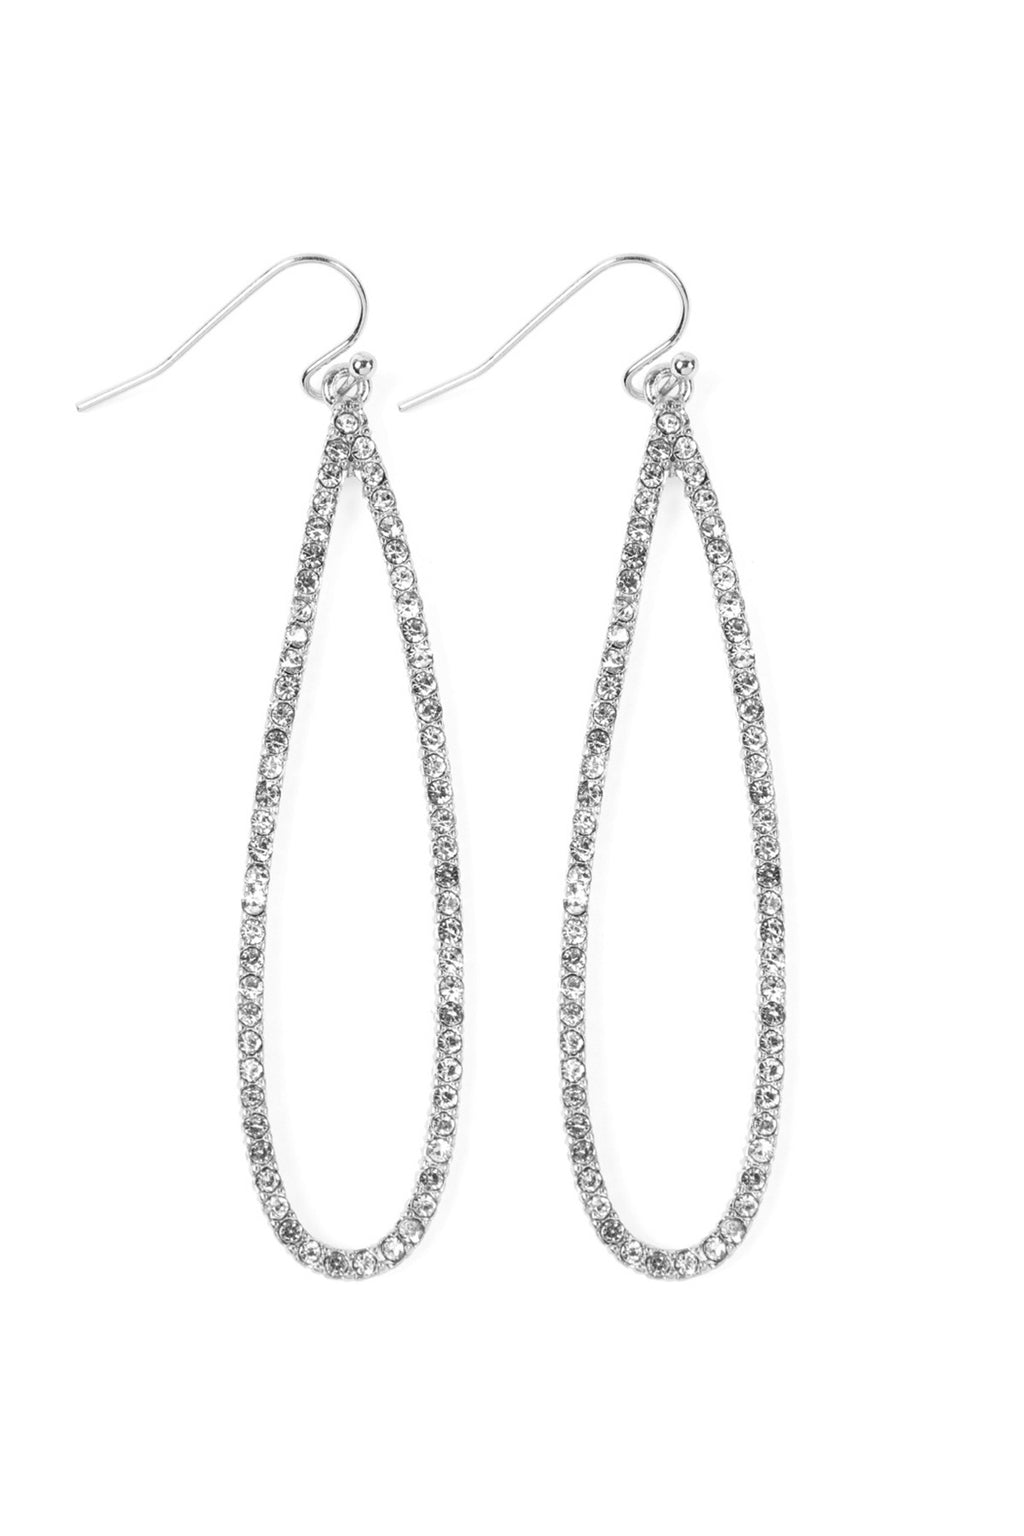 Silver Clear Long Teardrop Rhinestone Earrings - Pack of 6